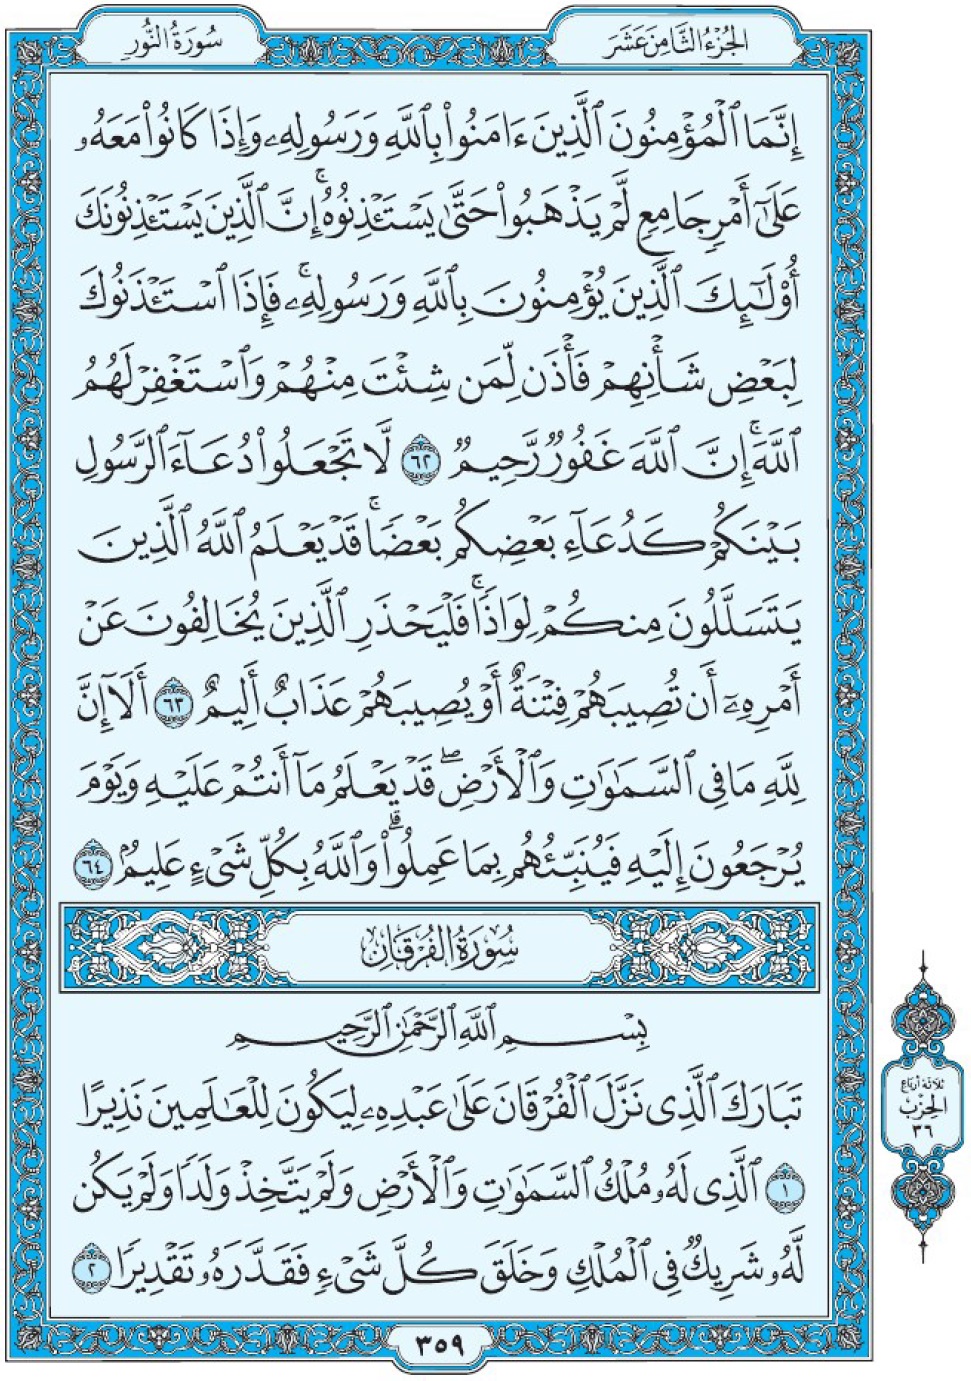 Коран Мединский мусхаф страница 359, сура 25 Аль-Фуркан سورة ٢٥ الفرقان 